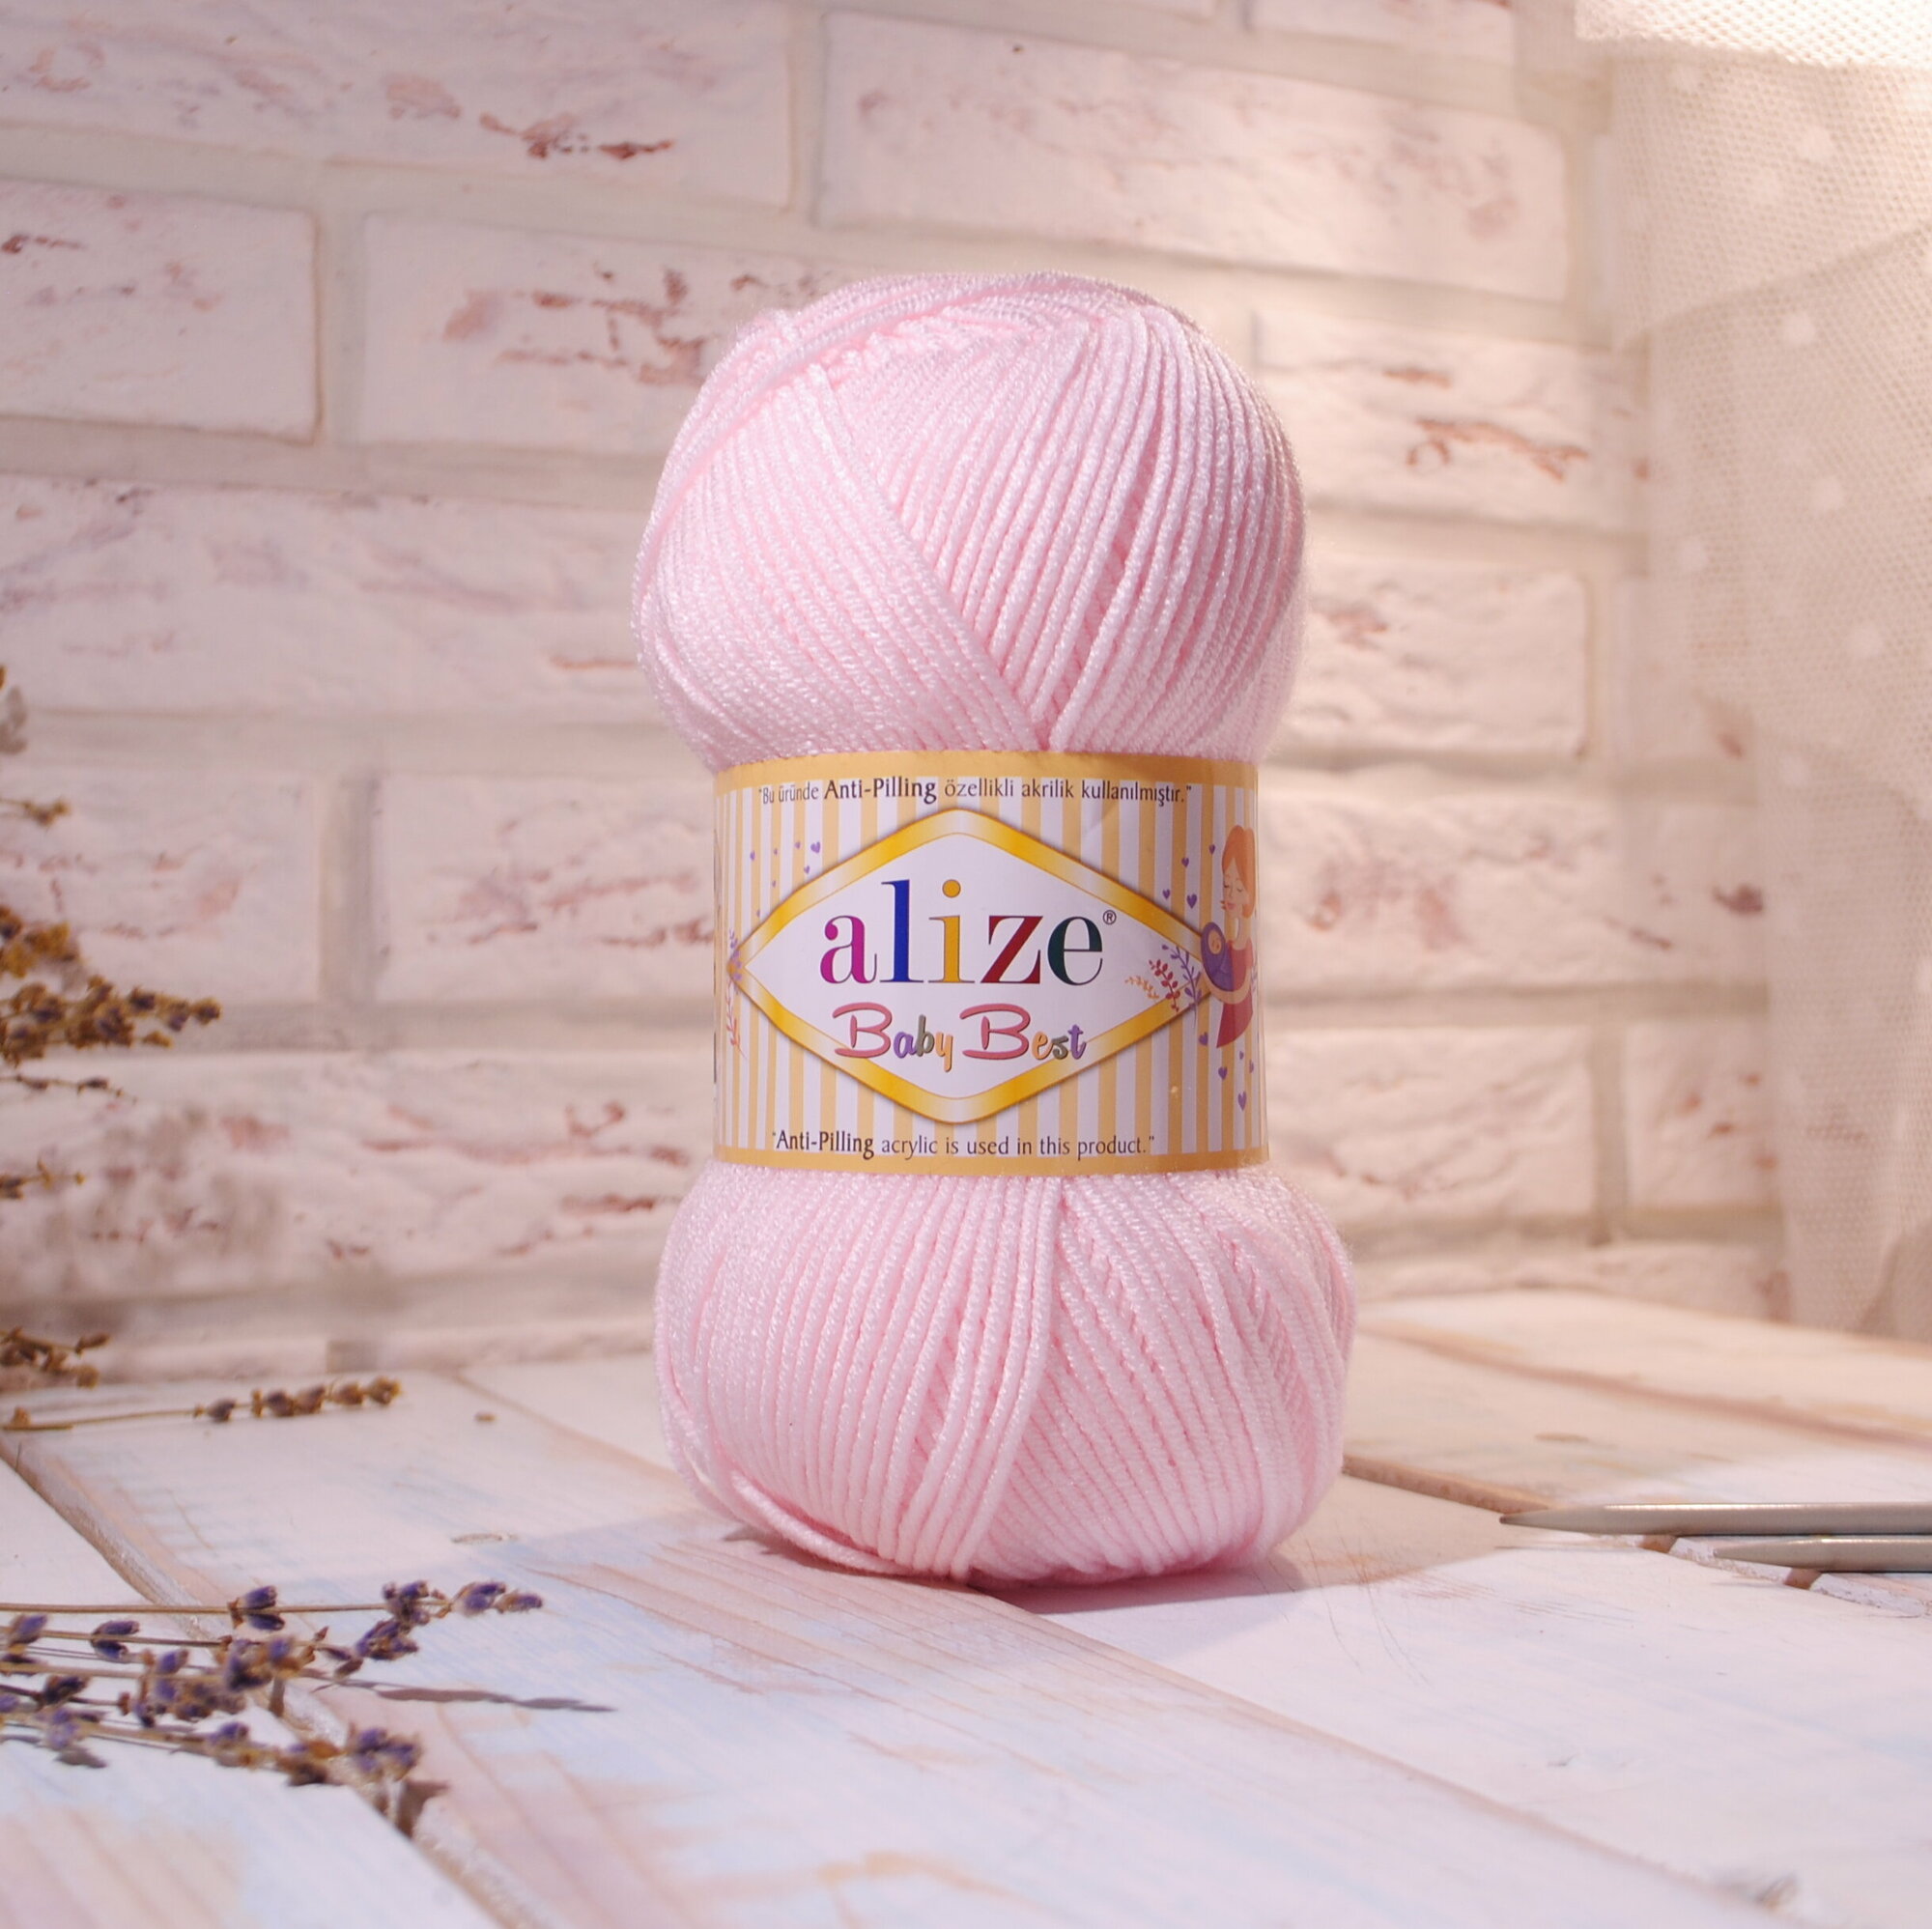 Пряжа Alize Baby Best, 184 розовая пудра, 90% акрил, 10% бамбук, 100 г, 240 м, 1 шт